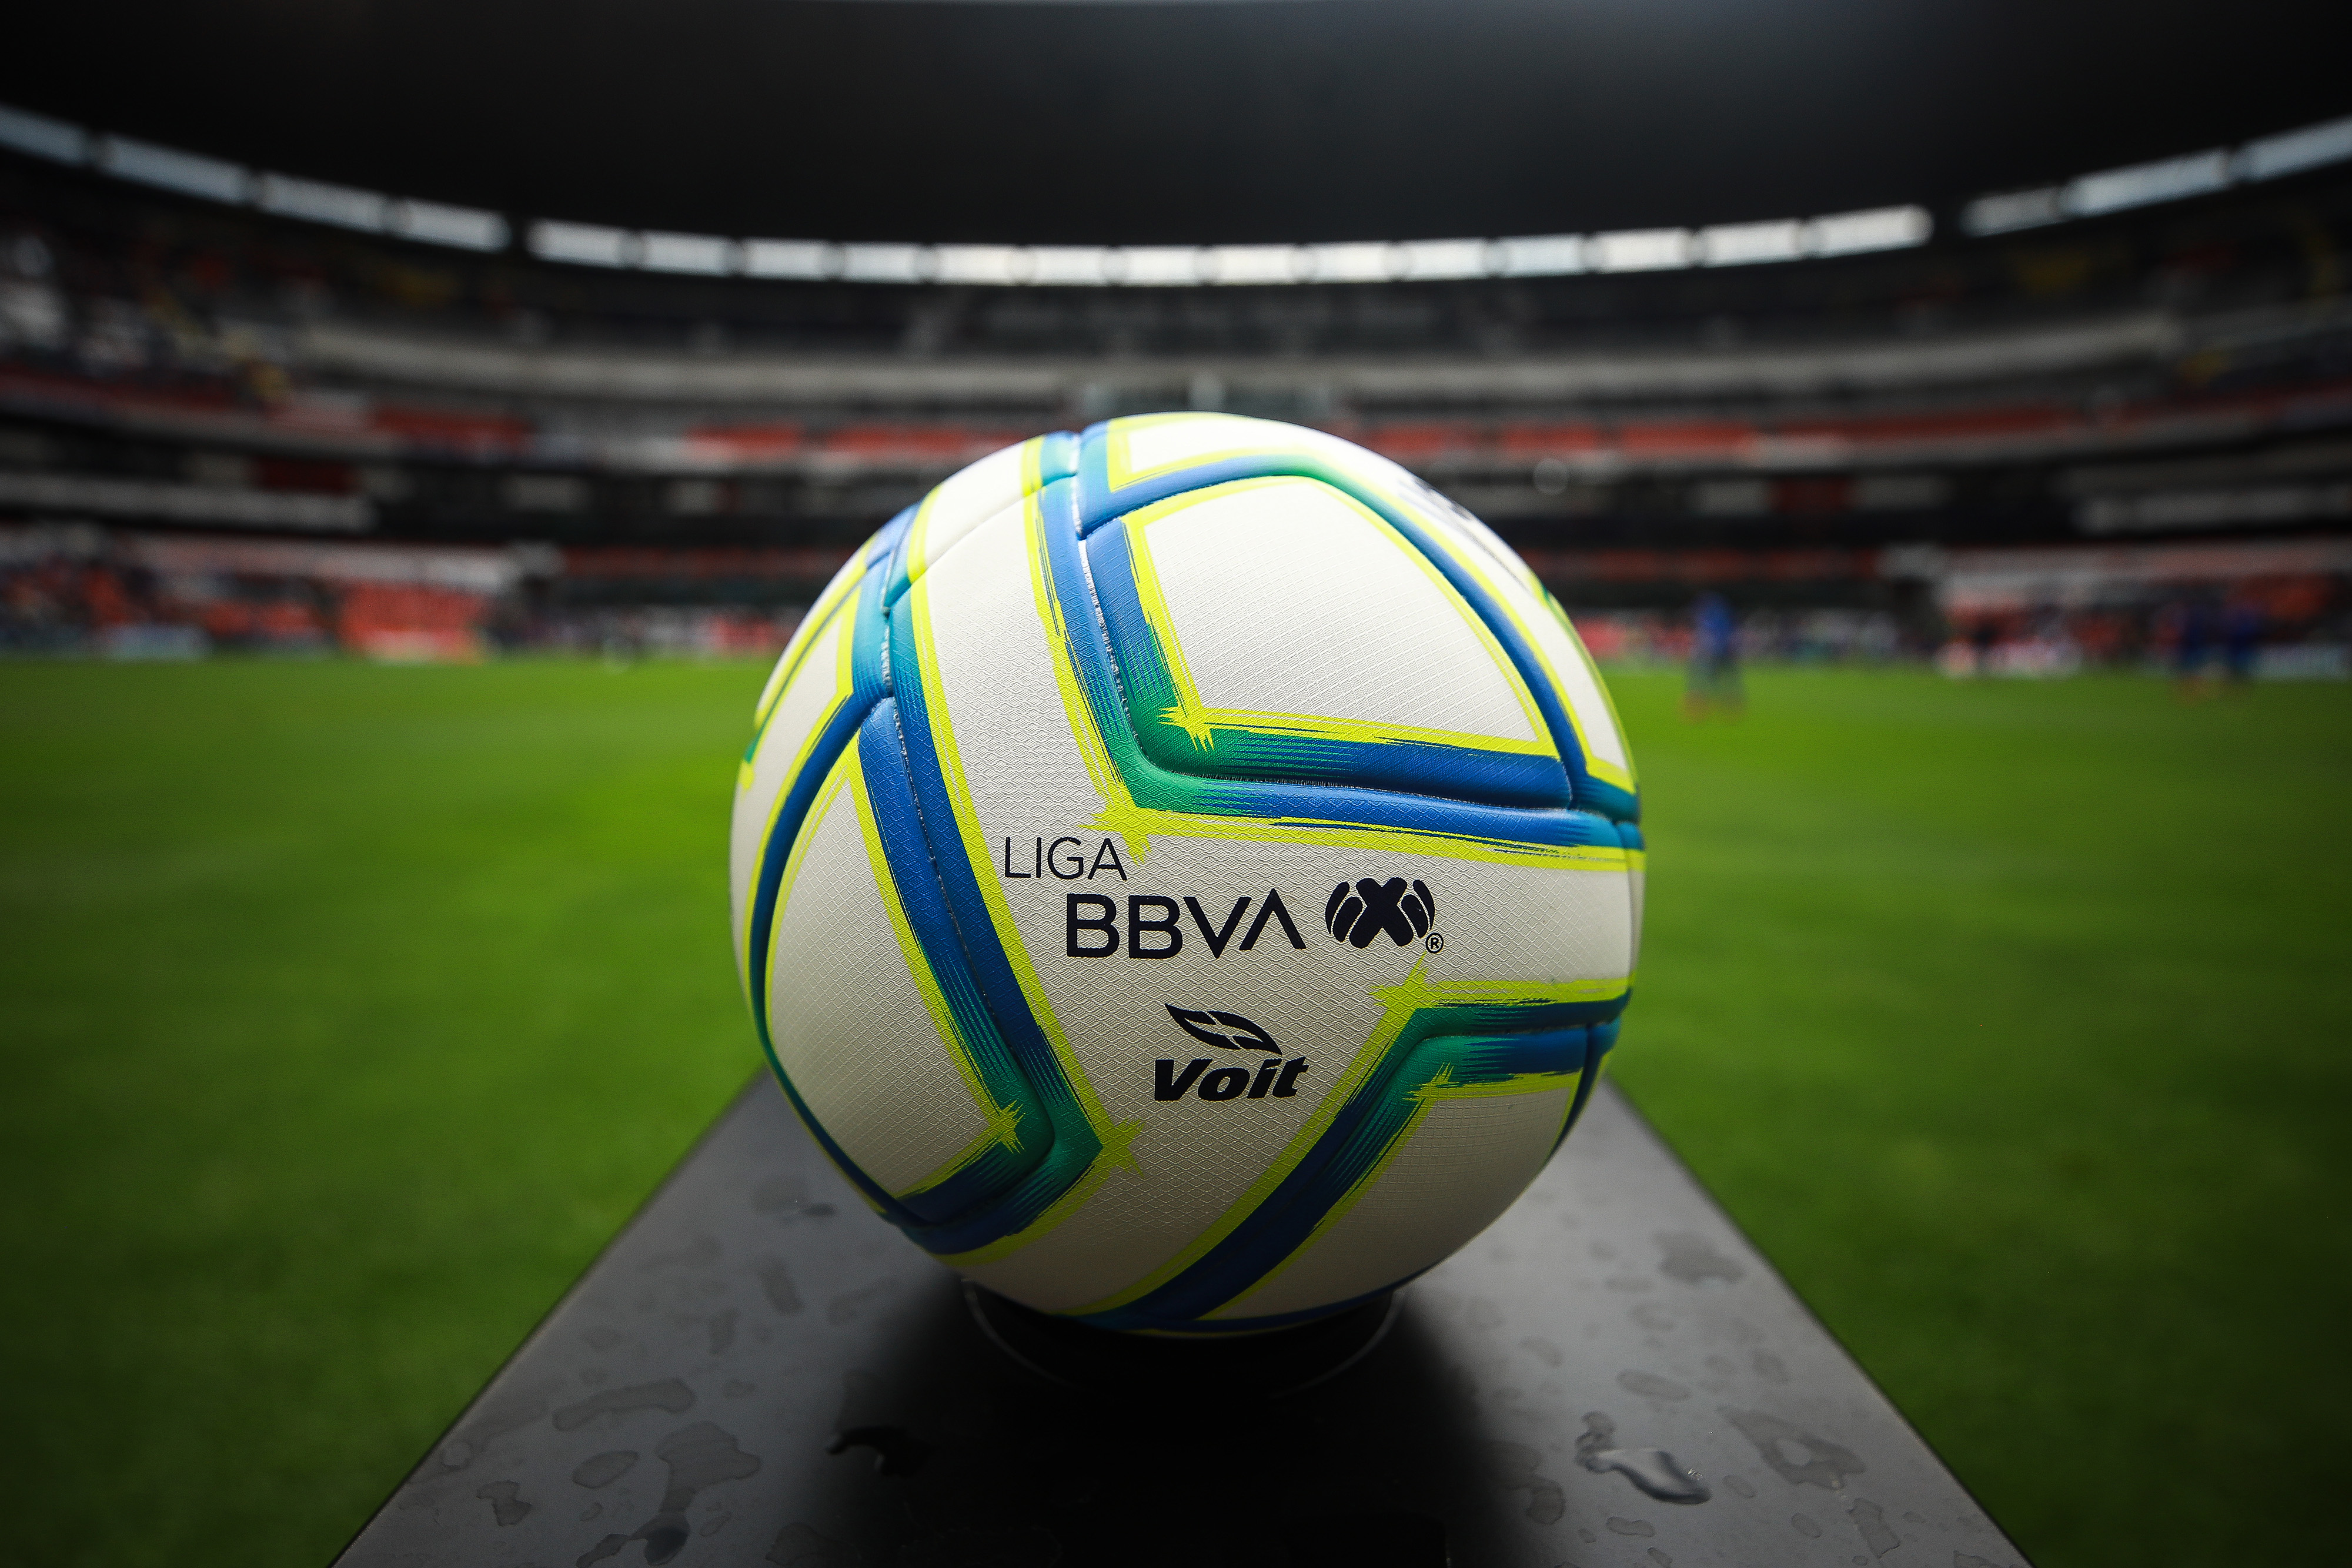 Liga MX: ¿Qué probabilidades tiene cada equipo de ser campeón en el  Clausura 2022? - ESPN